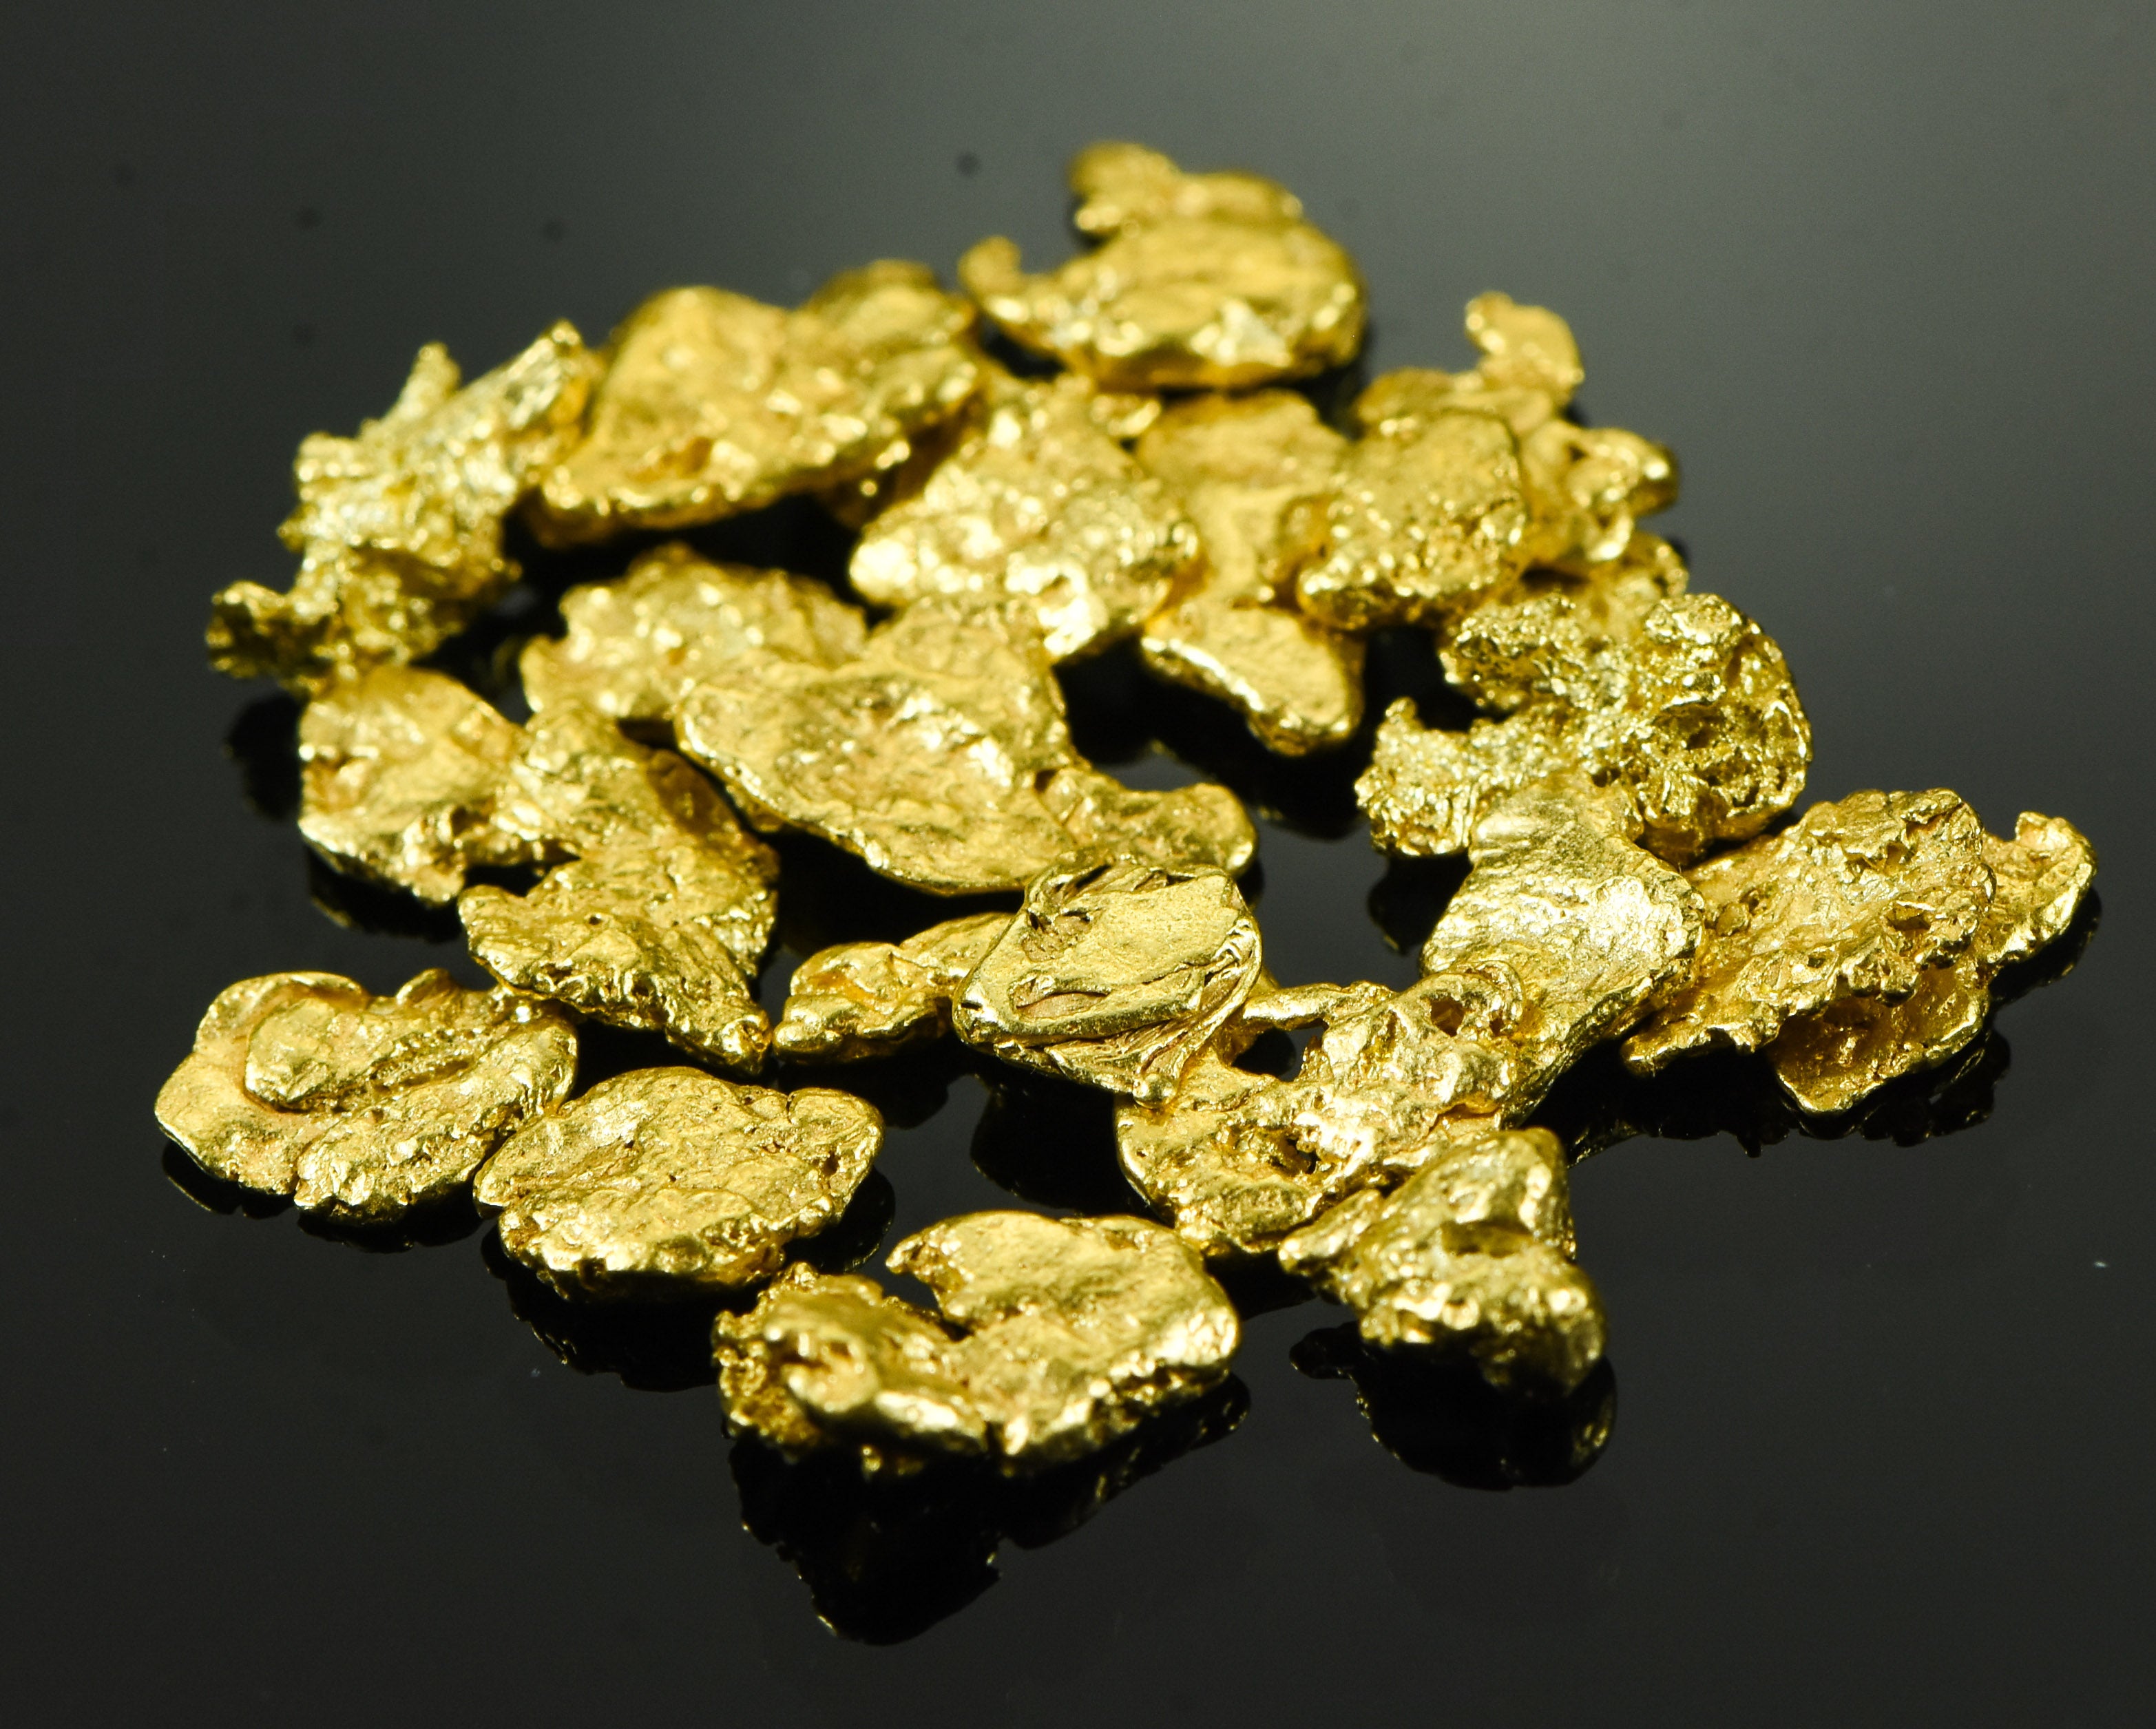 Alaskan Yukon BC Gold Rush Nuggets #6 Mesh 1/4 Troy Oz 7.75 Grams or 5 DWT